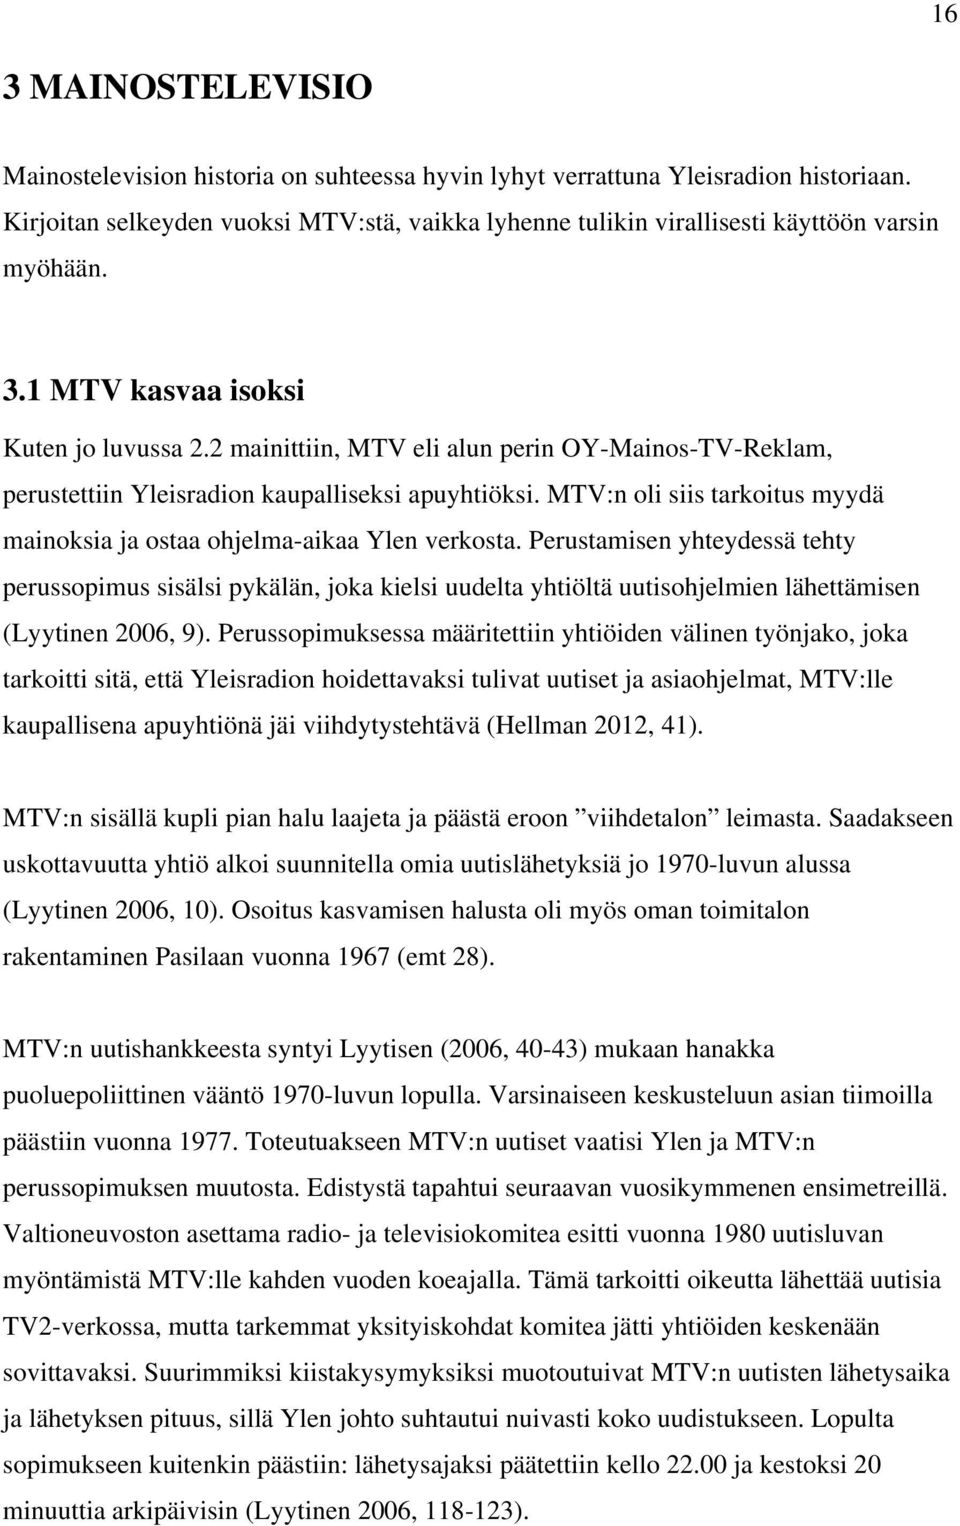 2 mainittiin, MTV eli alun perin OY-Mainos-TV-Reklam, perustettiin Yleisradion kaupalliseksi apuyhtiöksi. MTV:n oli siis tarkoitus myydä mainoksia ja ostaa ohjelma-aikaa Ylen verkosta.